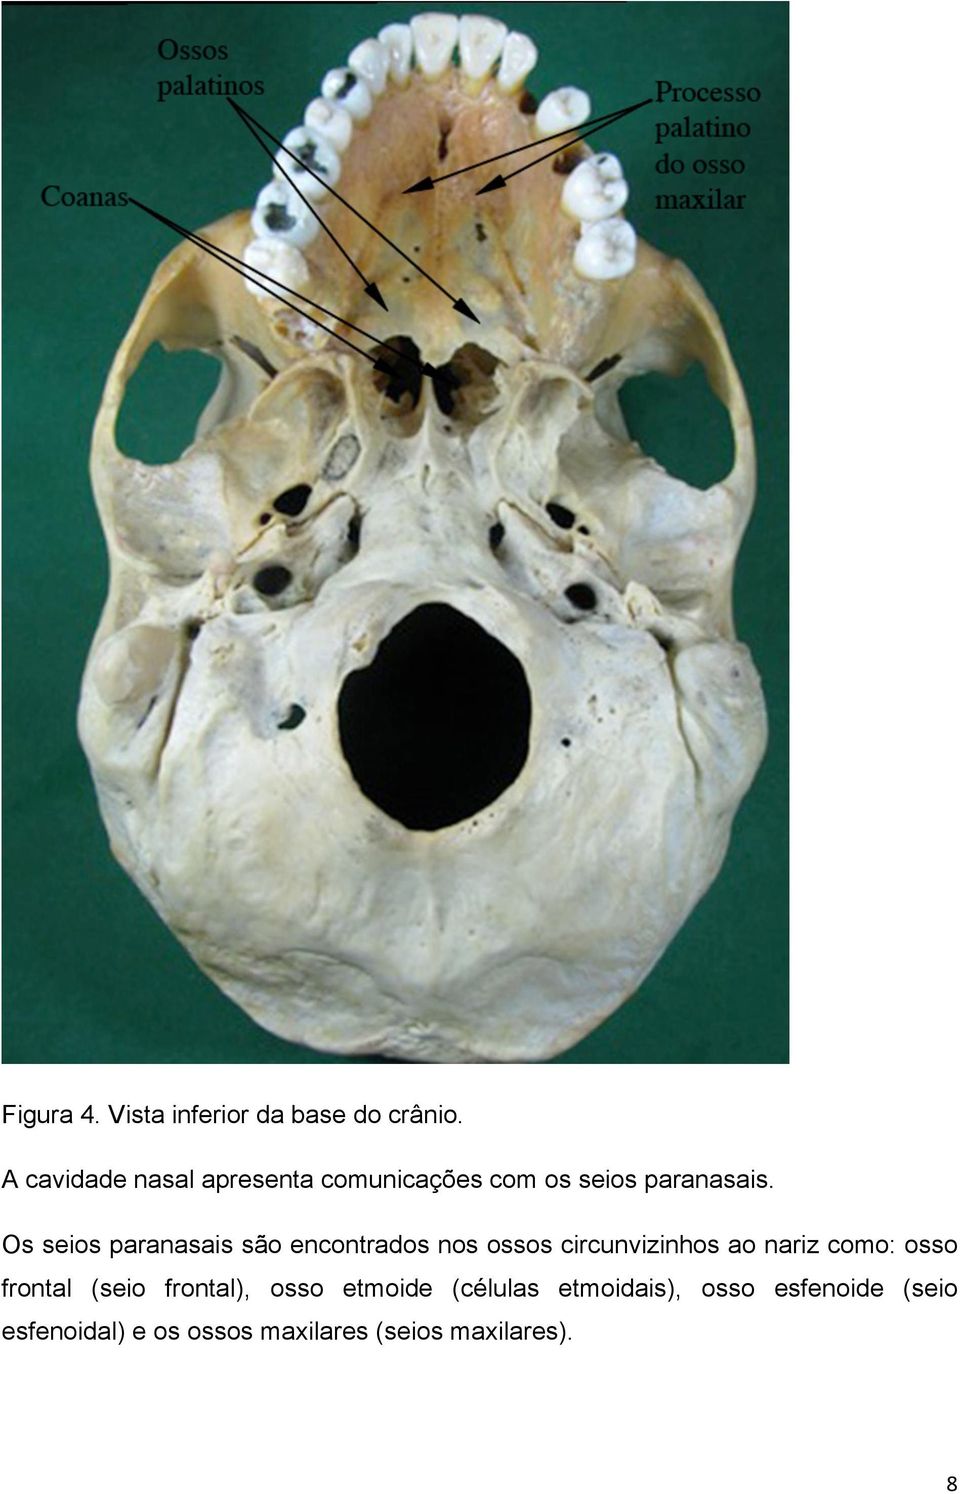 Os seios paranasais são encontrados nos ossos circunvizinhos ao nariz como: osso